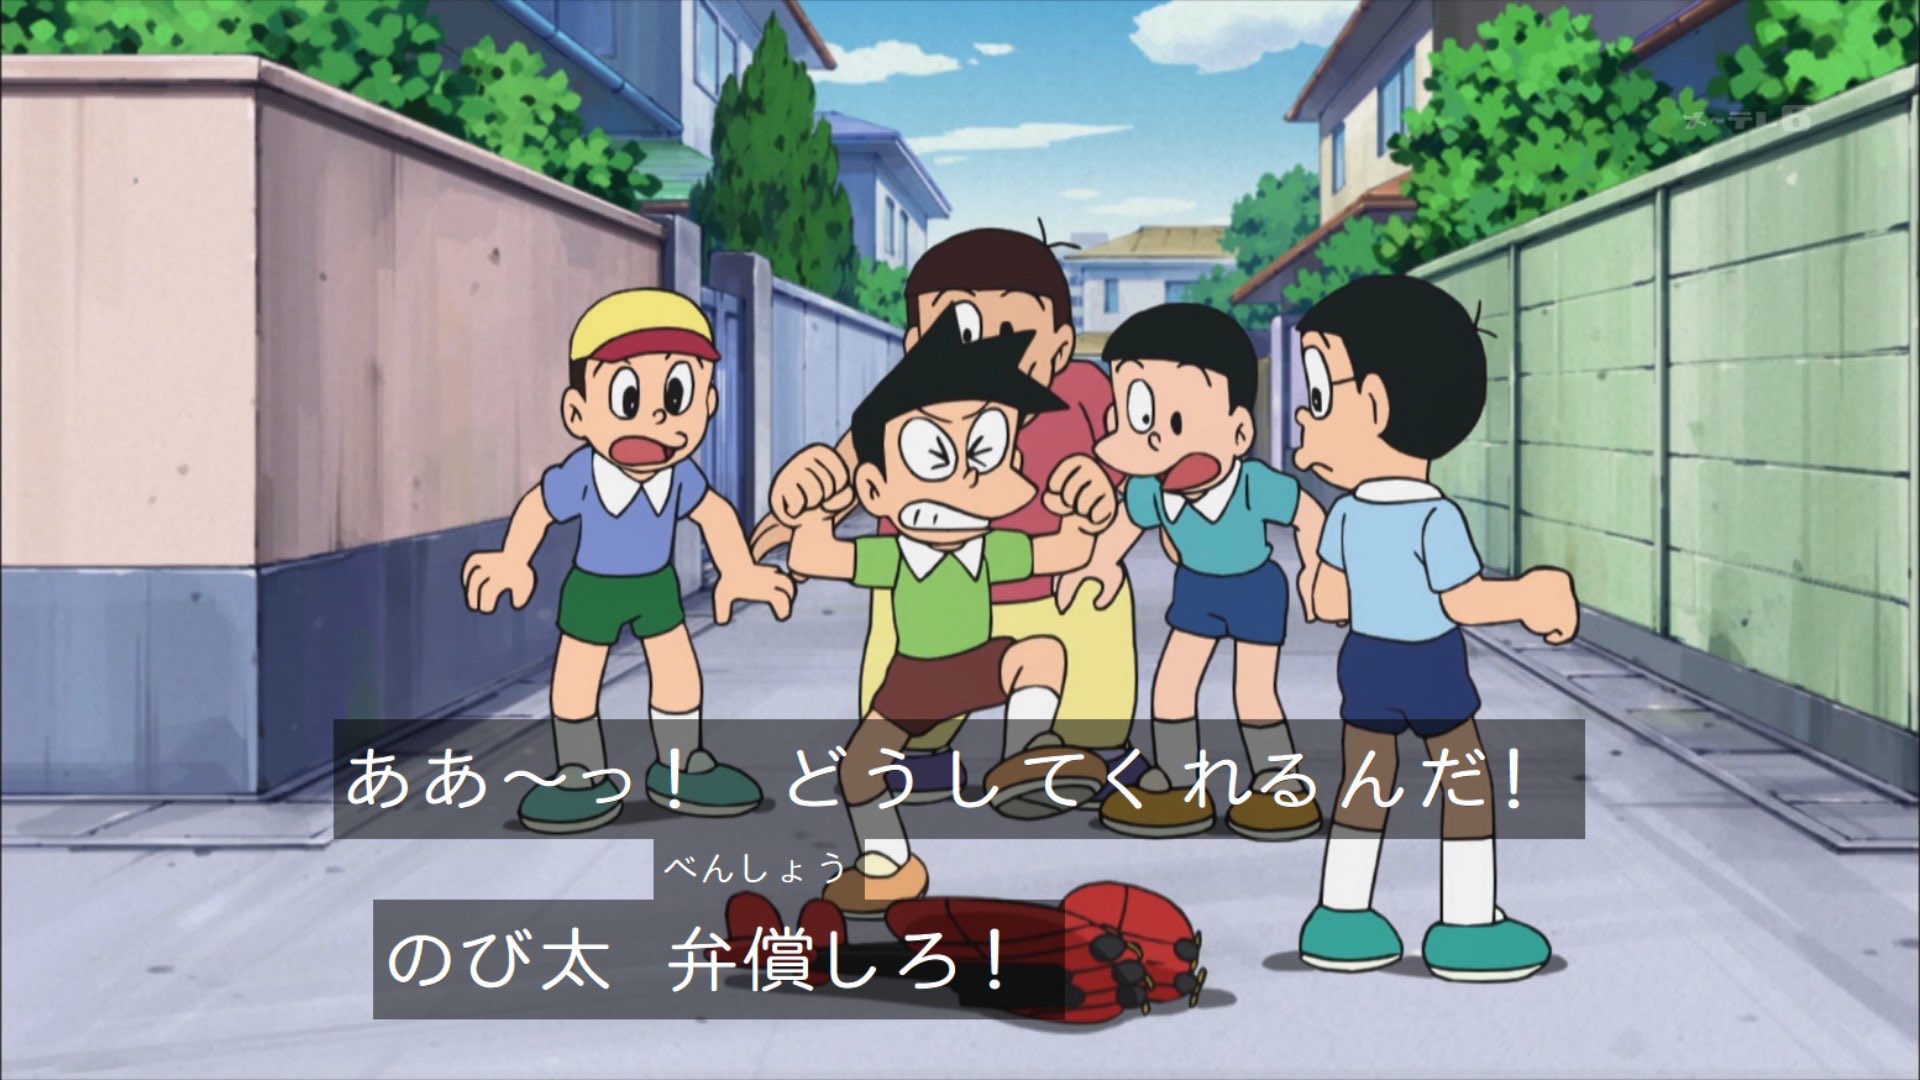 クロス 在 Twitter 上 たけしをおちょくって逃げる途中に前方不注意でスネ夫の大事な玩具を破壊 そのまま謝らず逃げていく のび太も大概クズいな ドラえもん Doraemon T Co Ddir6gimb5 Twitter